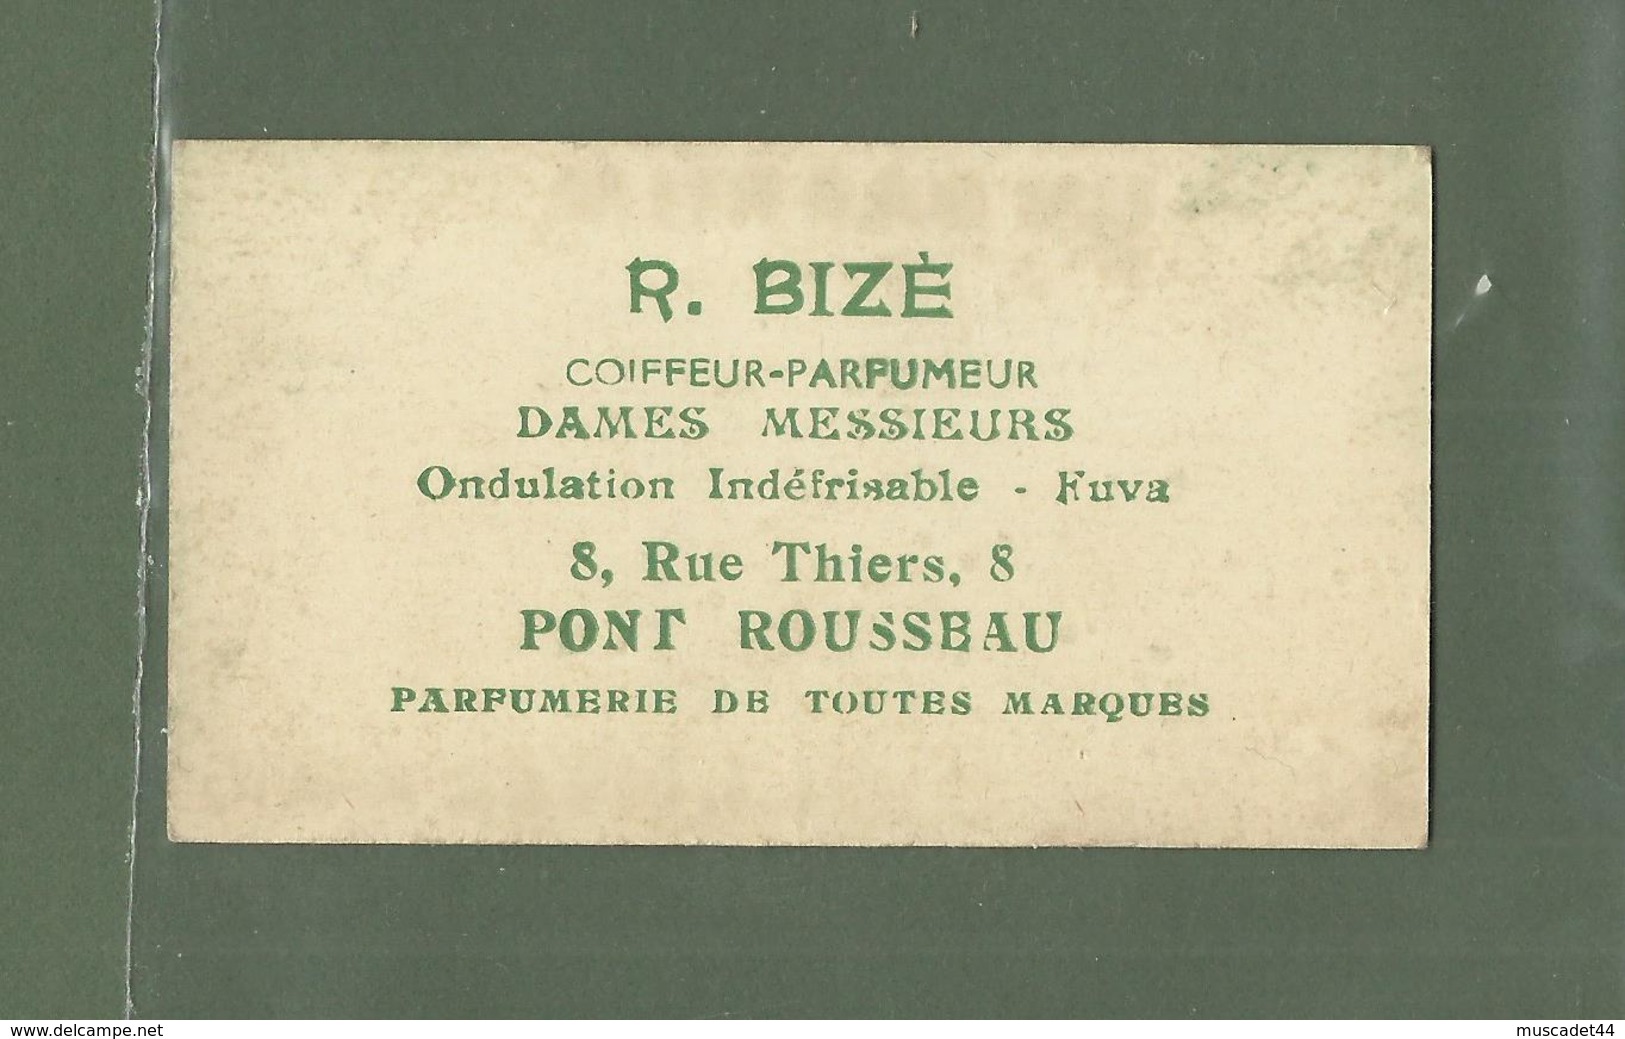 CARTE PARFUMEE UN PARFUM D AVENTURE L.T.PIVER PARIS R.BIZE PARFUMERIE PONT ROUSSEAU LOIRE ATLANTIQUE 44 - Vintage (until 1960)